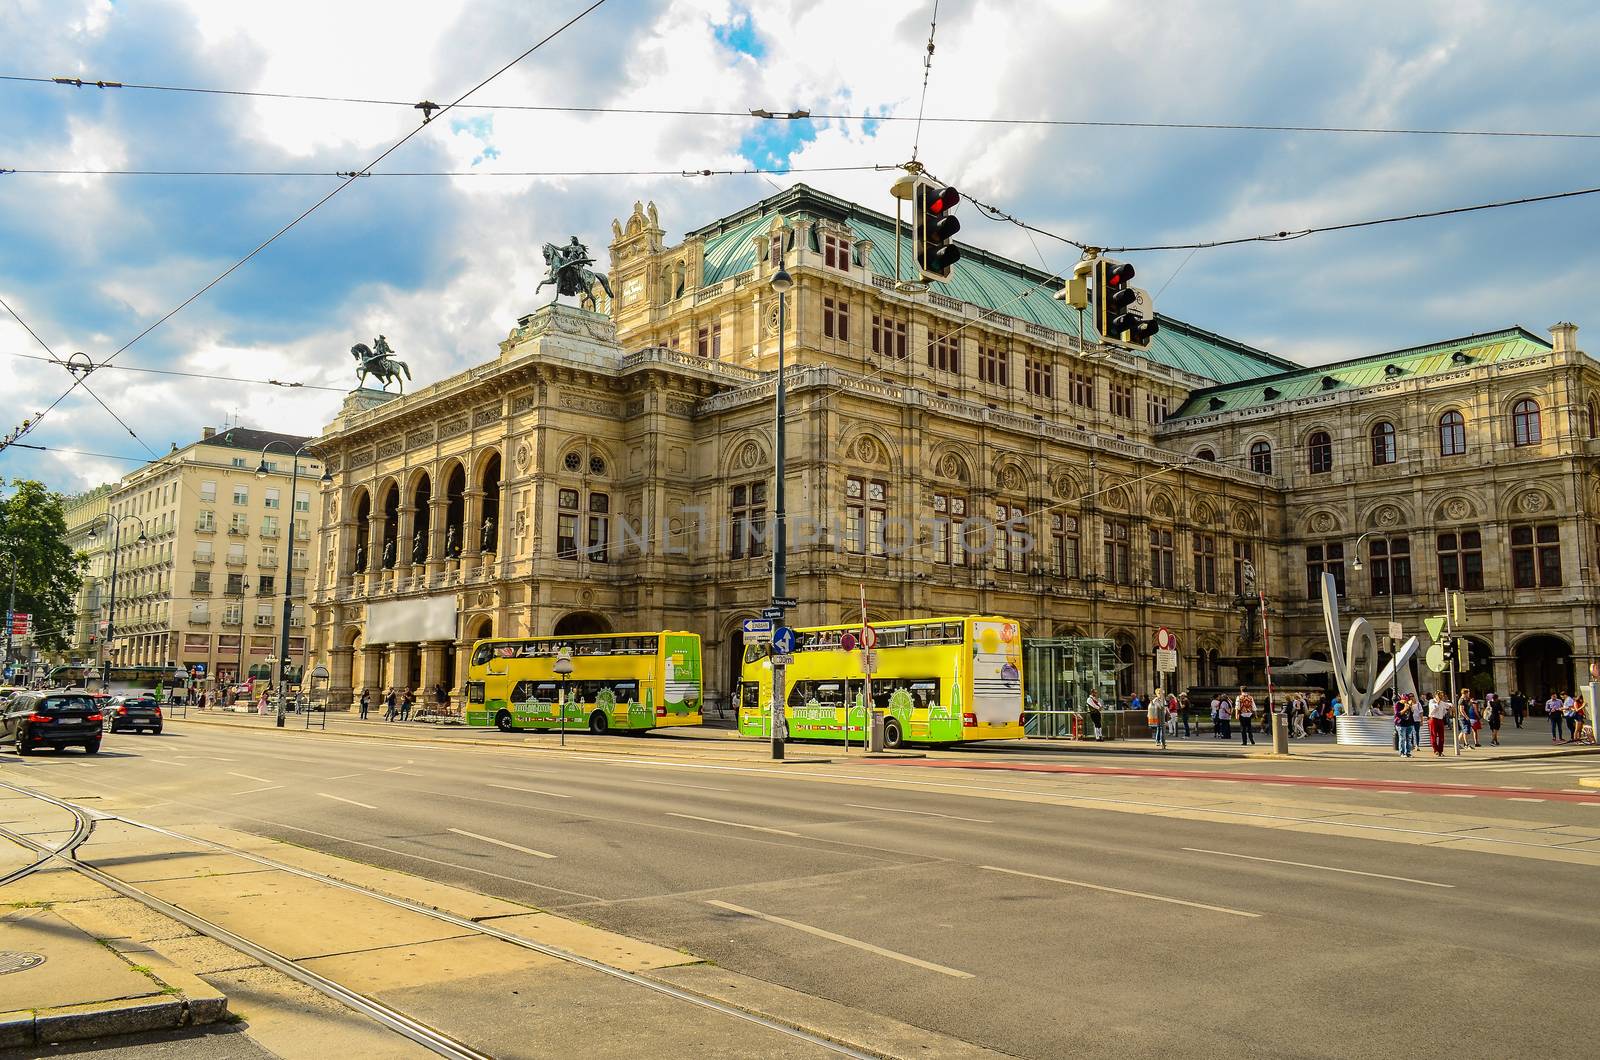 The Vienna State Opera house, Austria by chernobrovin